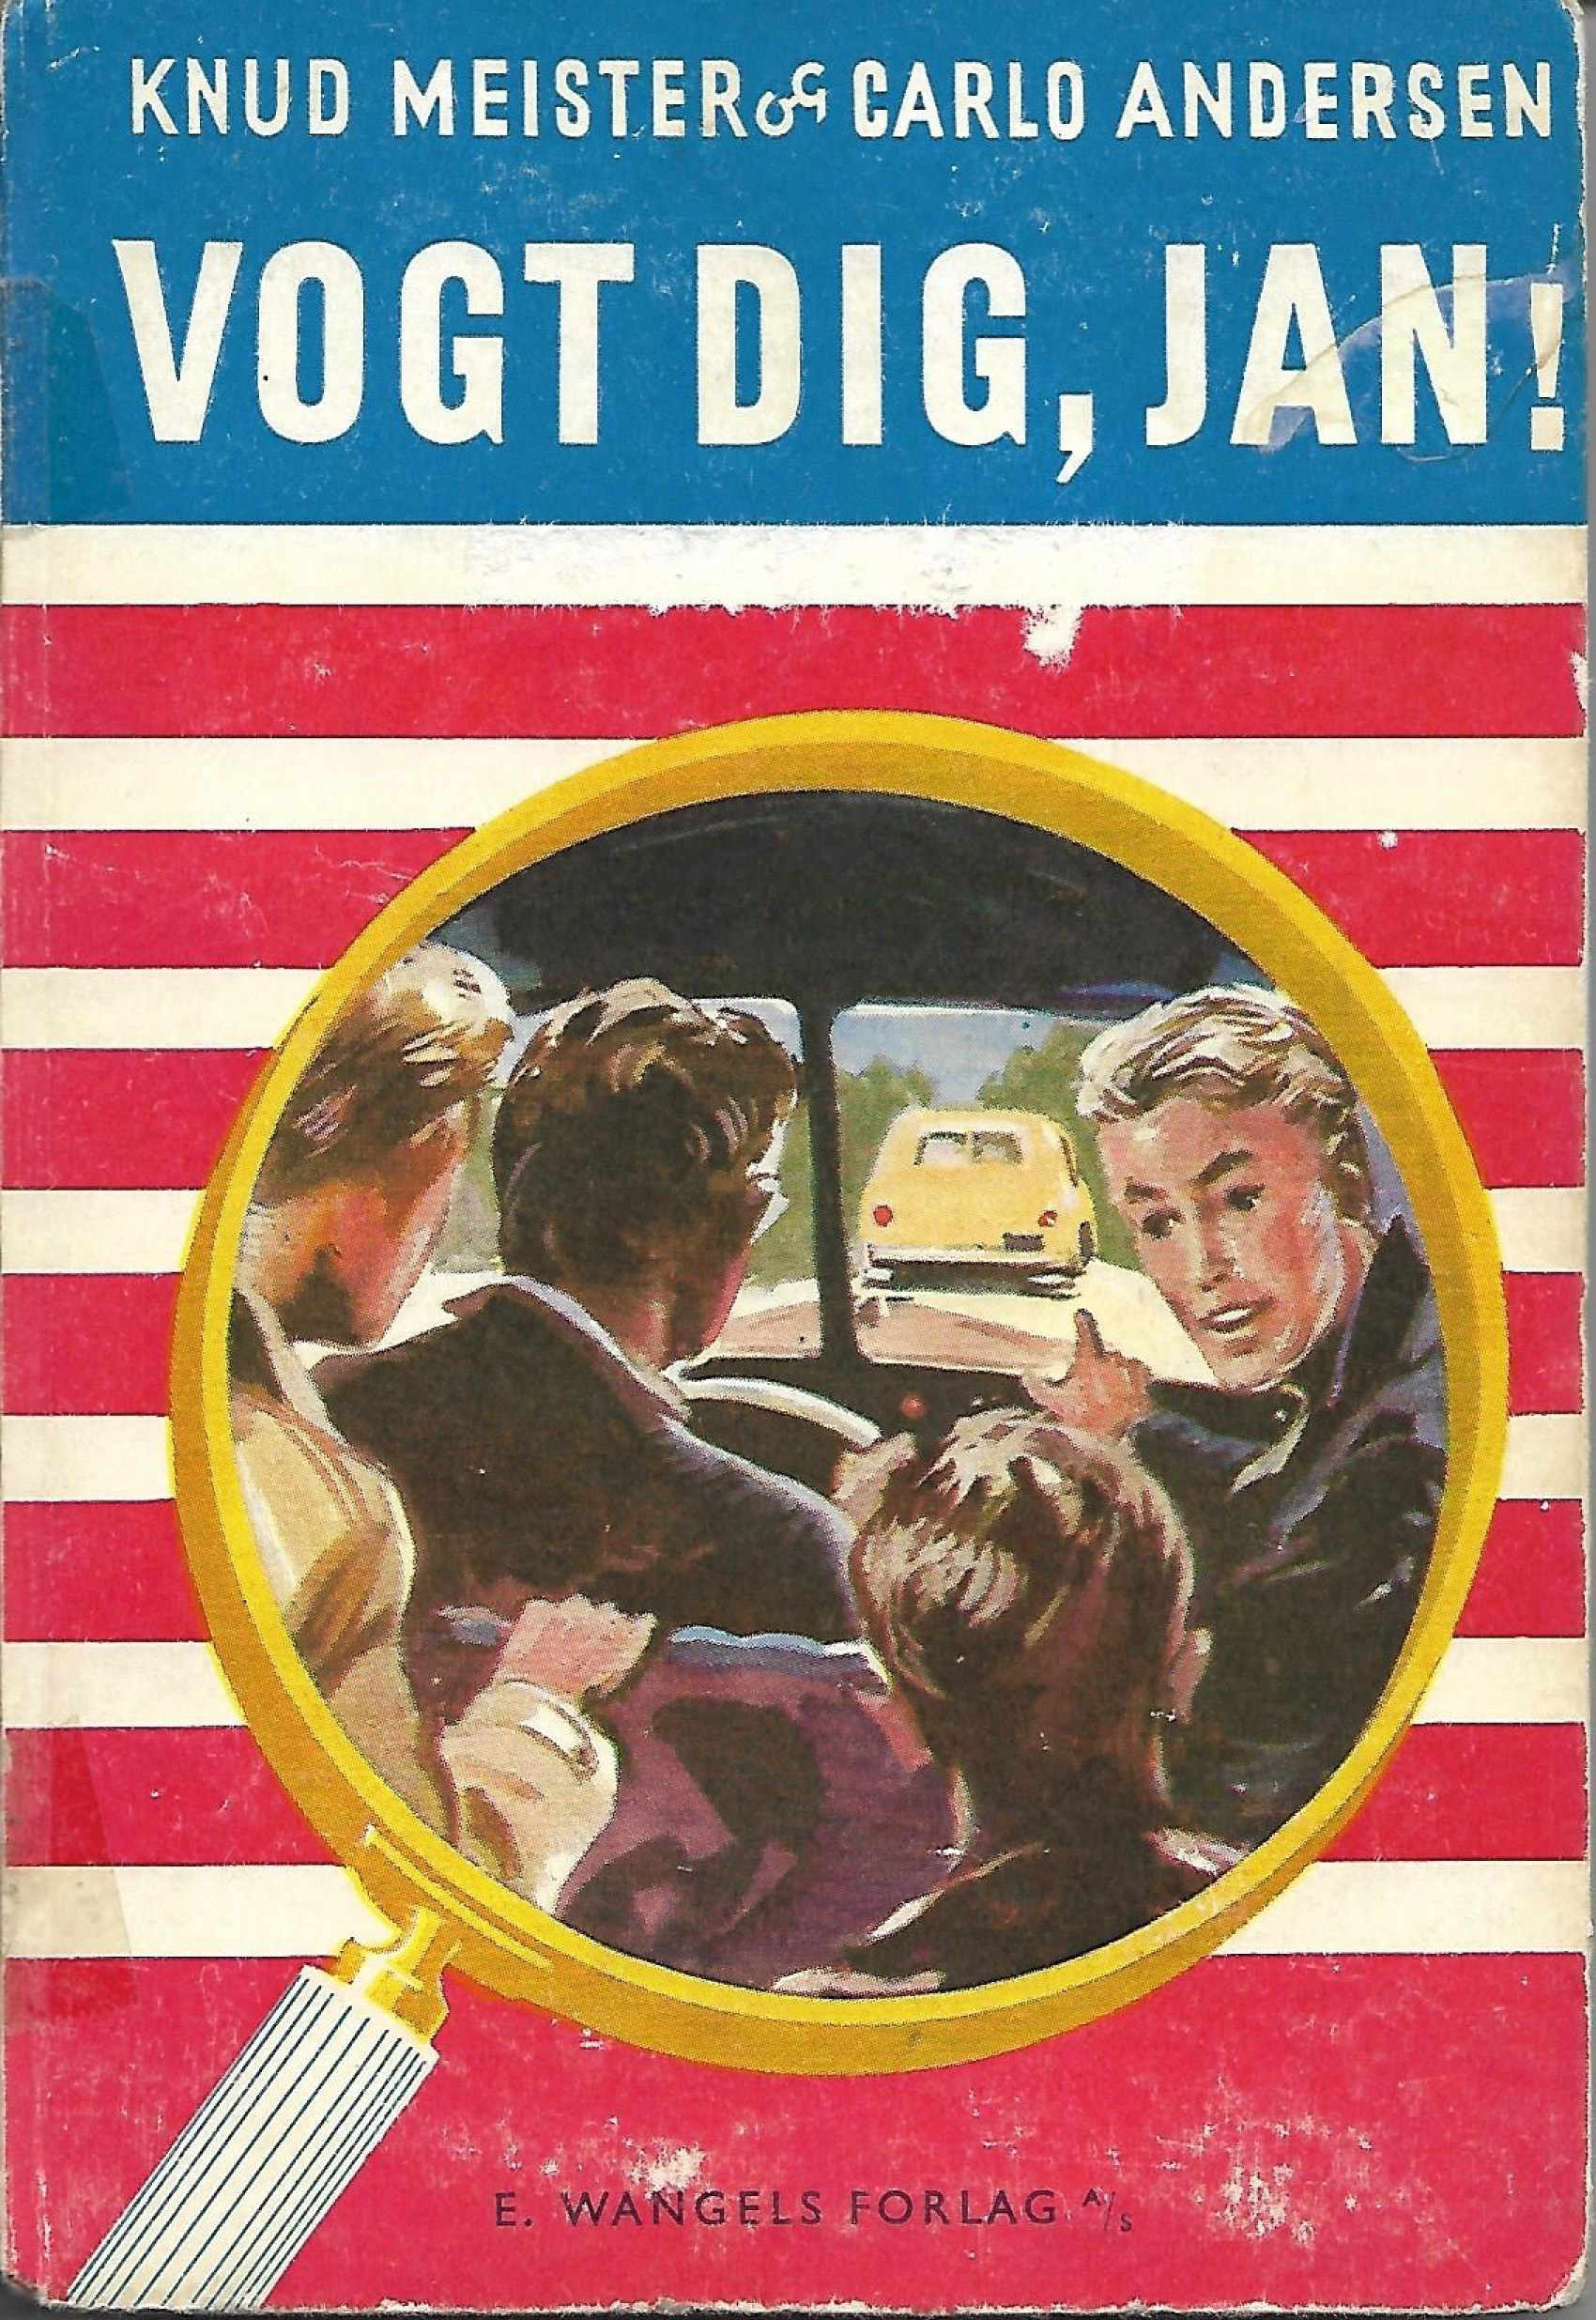 Vogt dig Jan - Knud Meister & Carlo Andersen-1